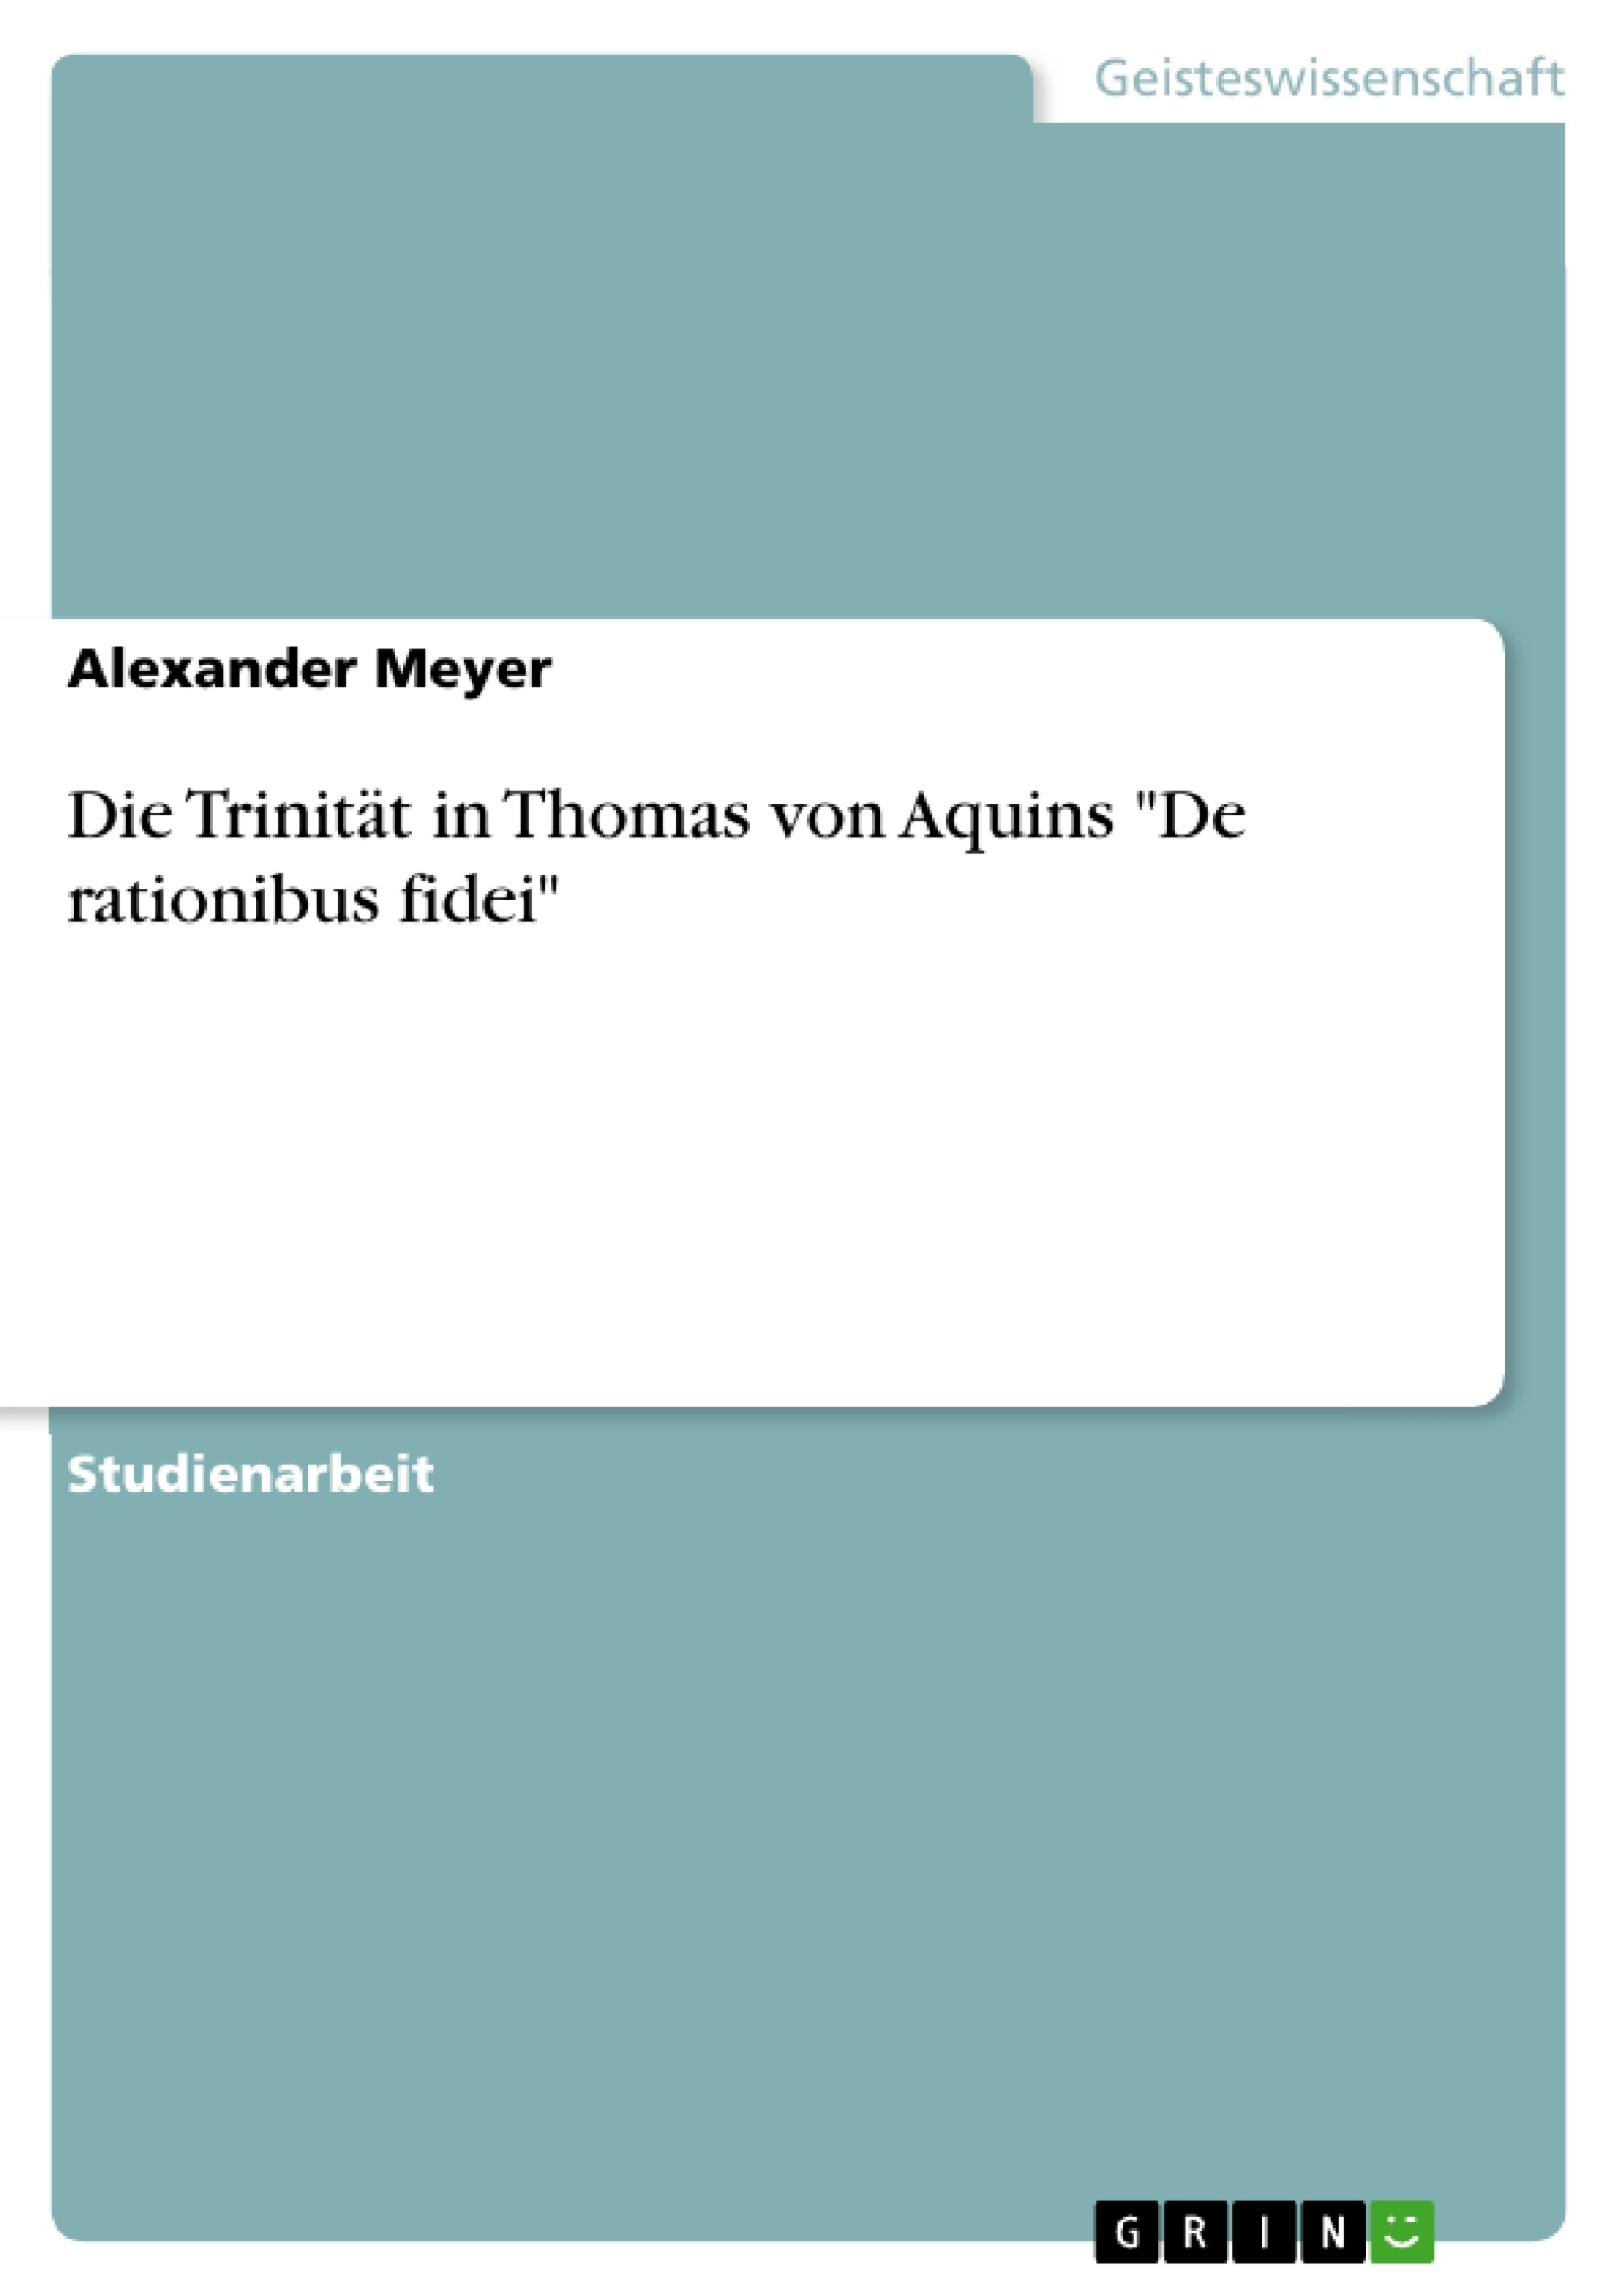 Titre: Die Trinität in Thomas von Aquins "De rationibus fidei"